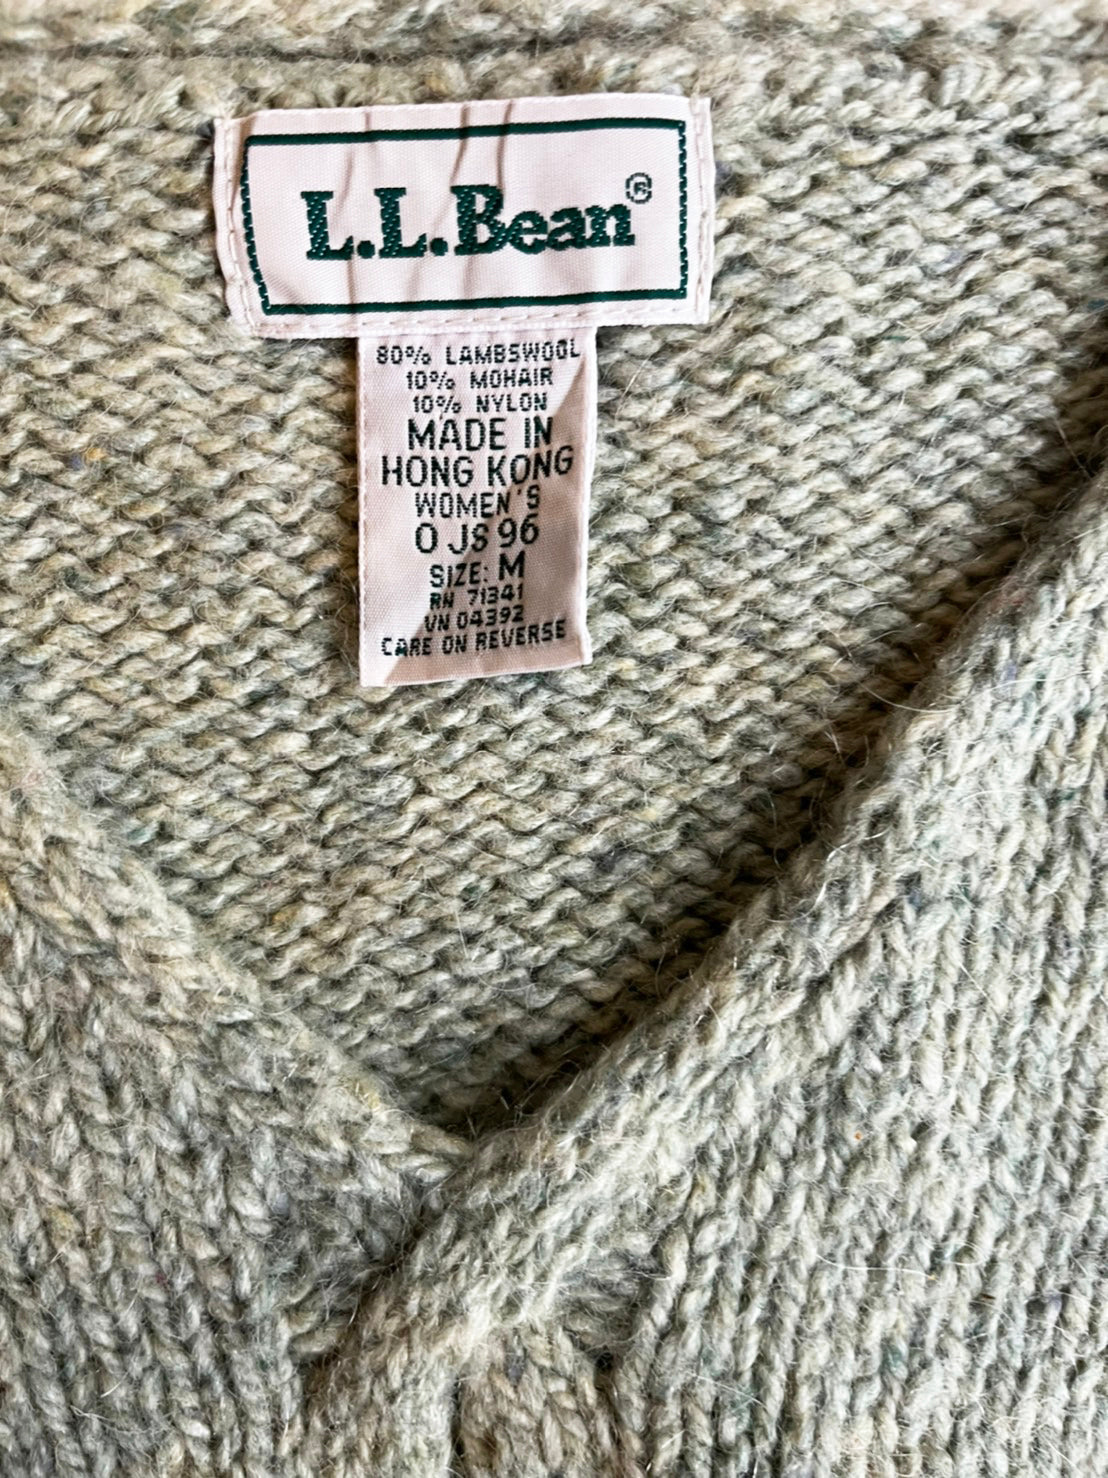 【L.L BEAN】90's エルエルビーン Vネック ライトグリーン セーター (women's M)